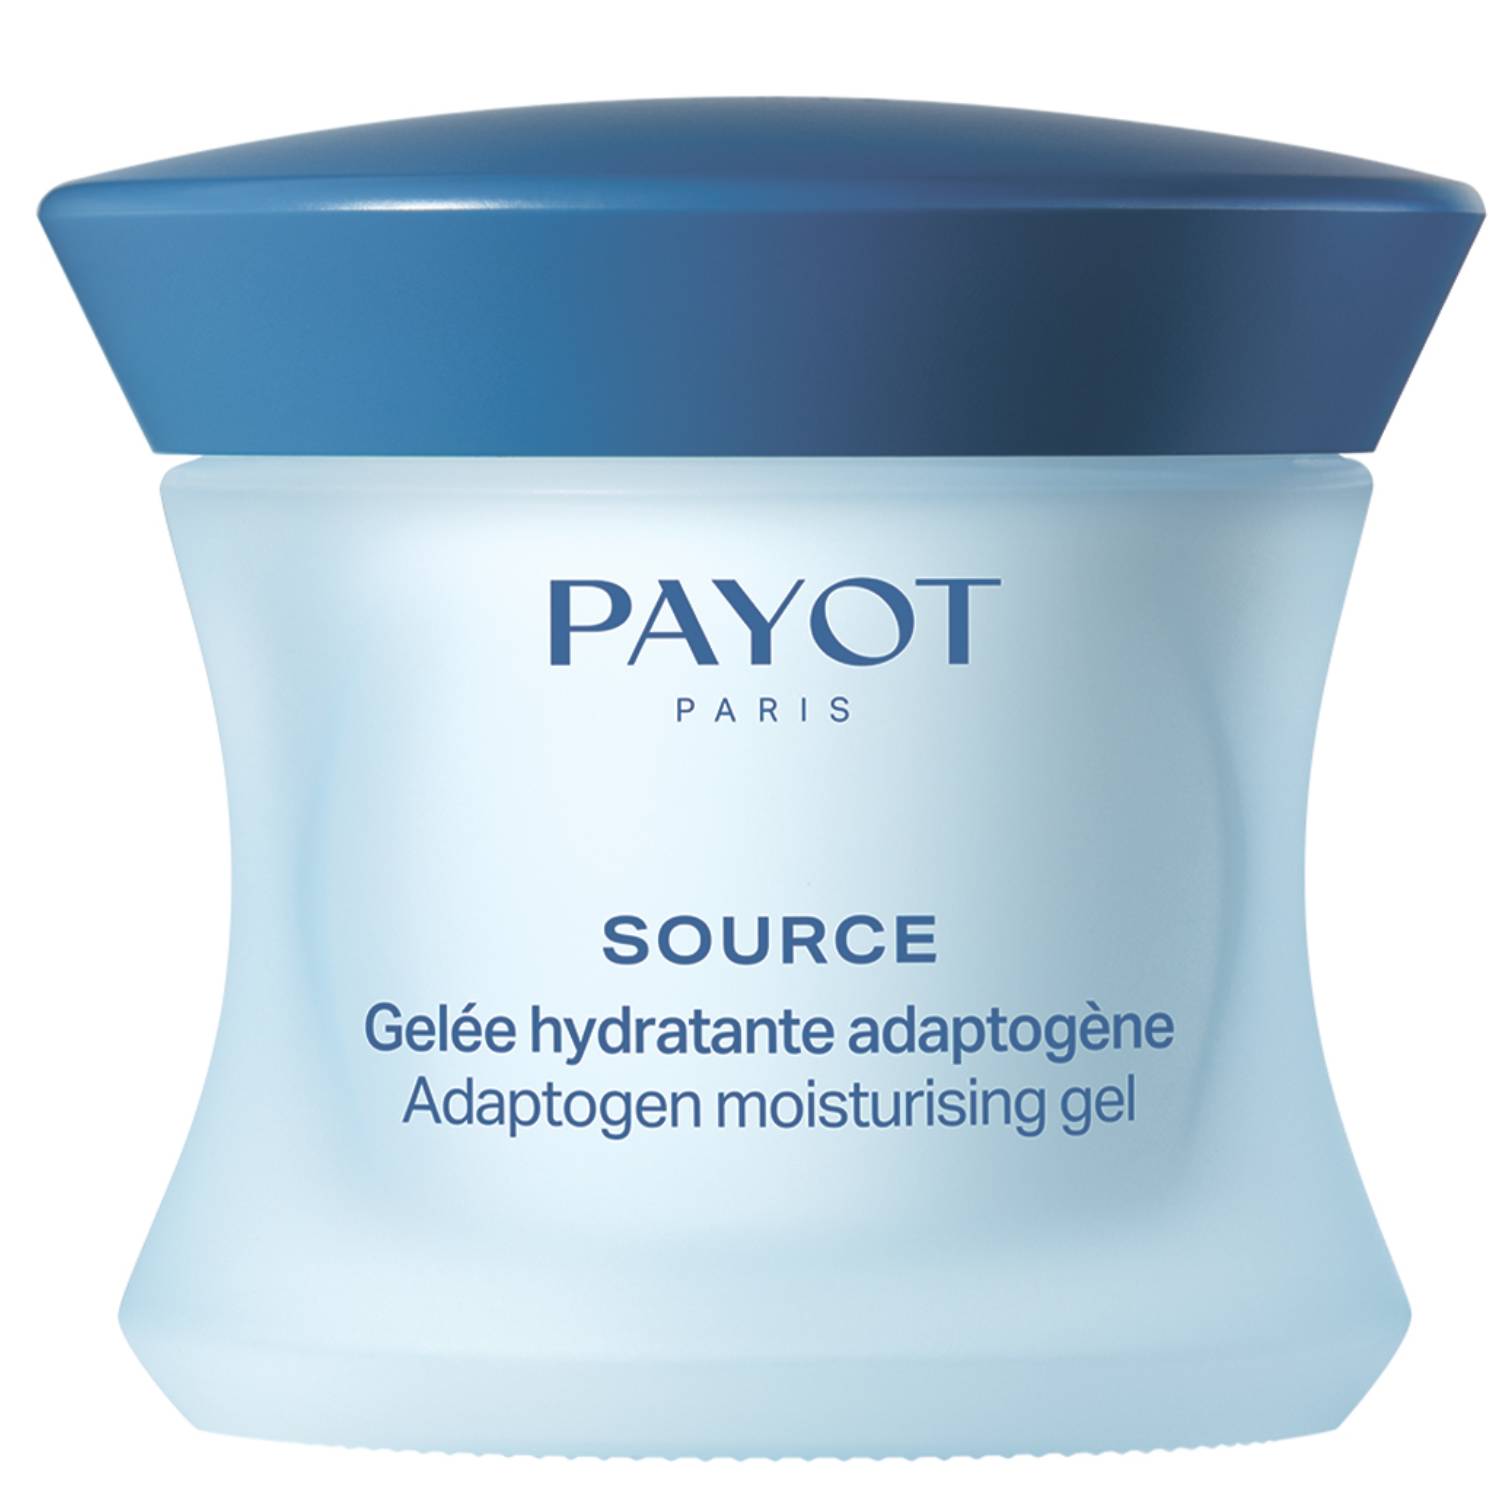 Payot Увлажняющий крем-гель для нормальной и комбинированной кожи лица Adaptogen Moisturising Gel, 50 мл (Payot, Source) payot source adaptogen moisturising gel